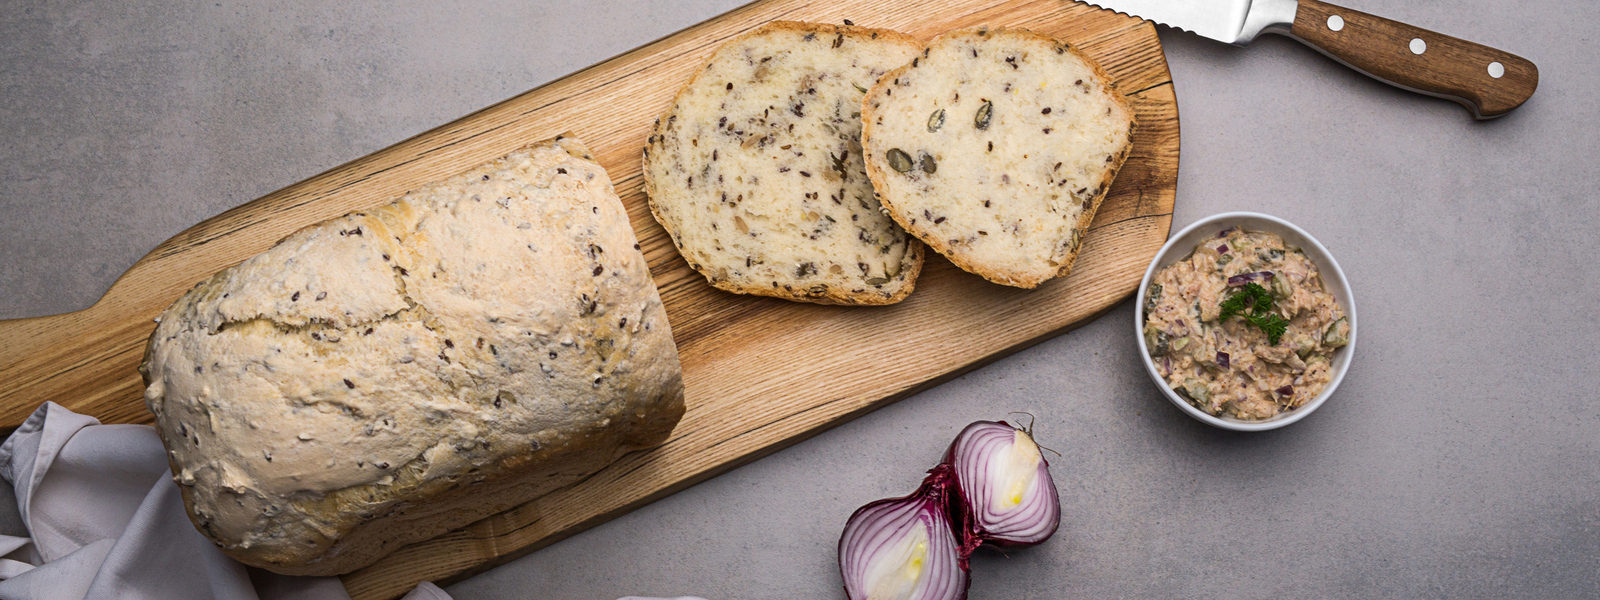 Nepřekonatelný domácí chléb aneb 10 důvodu, proč si pořídit domácí pekárnu